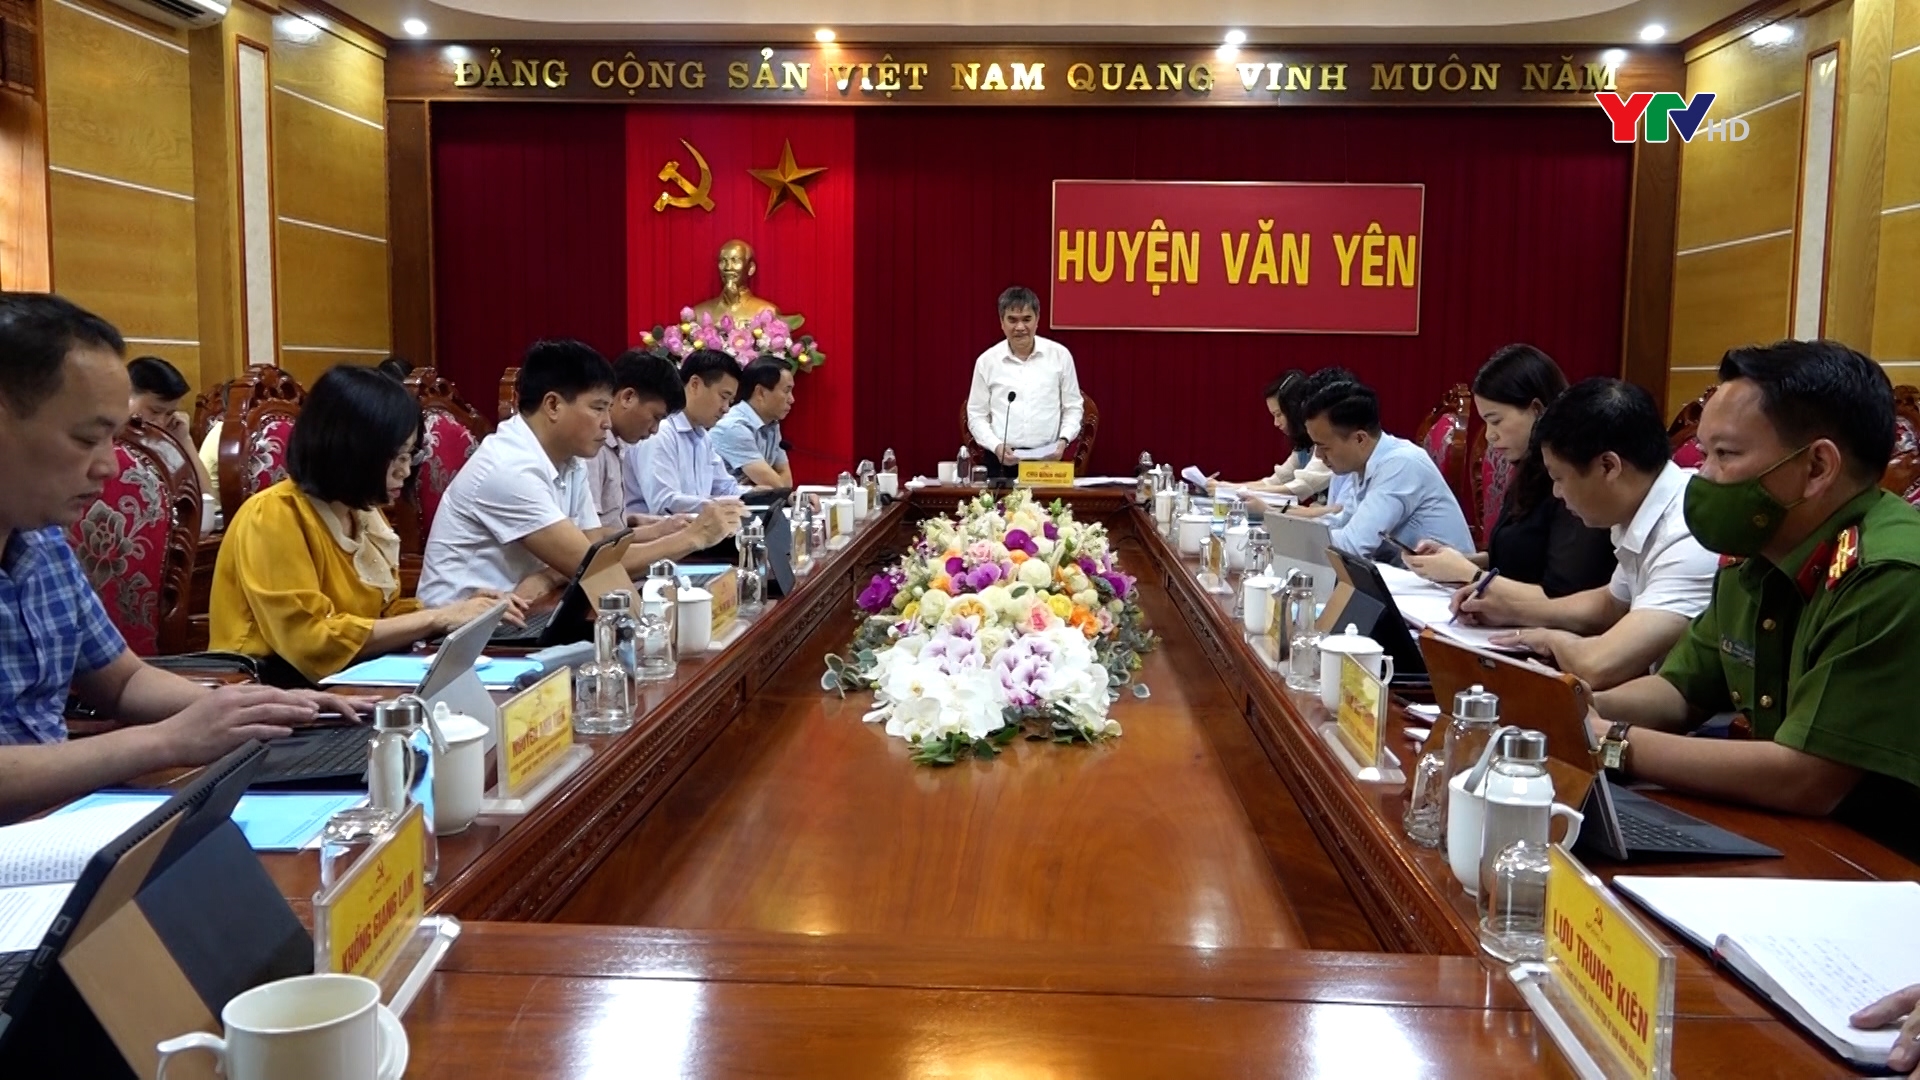 Đoàn công tác của Tỉnh ủy Yên Bái làm việc tại huyện Văn Yên